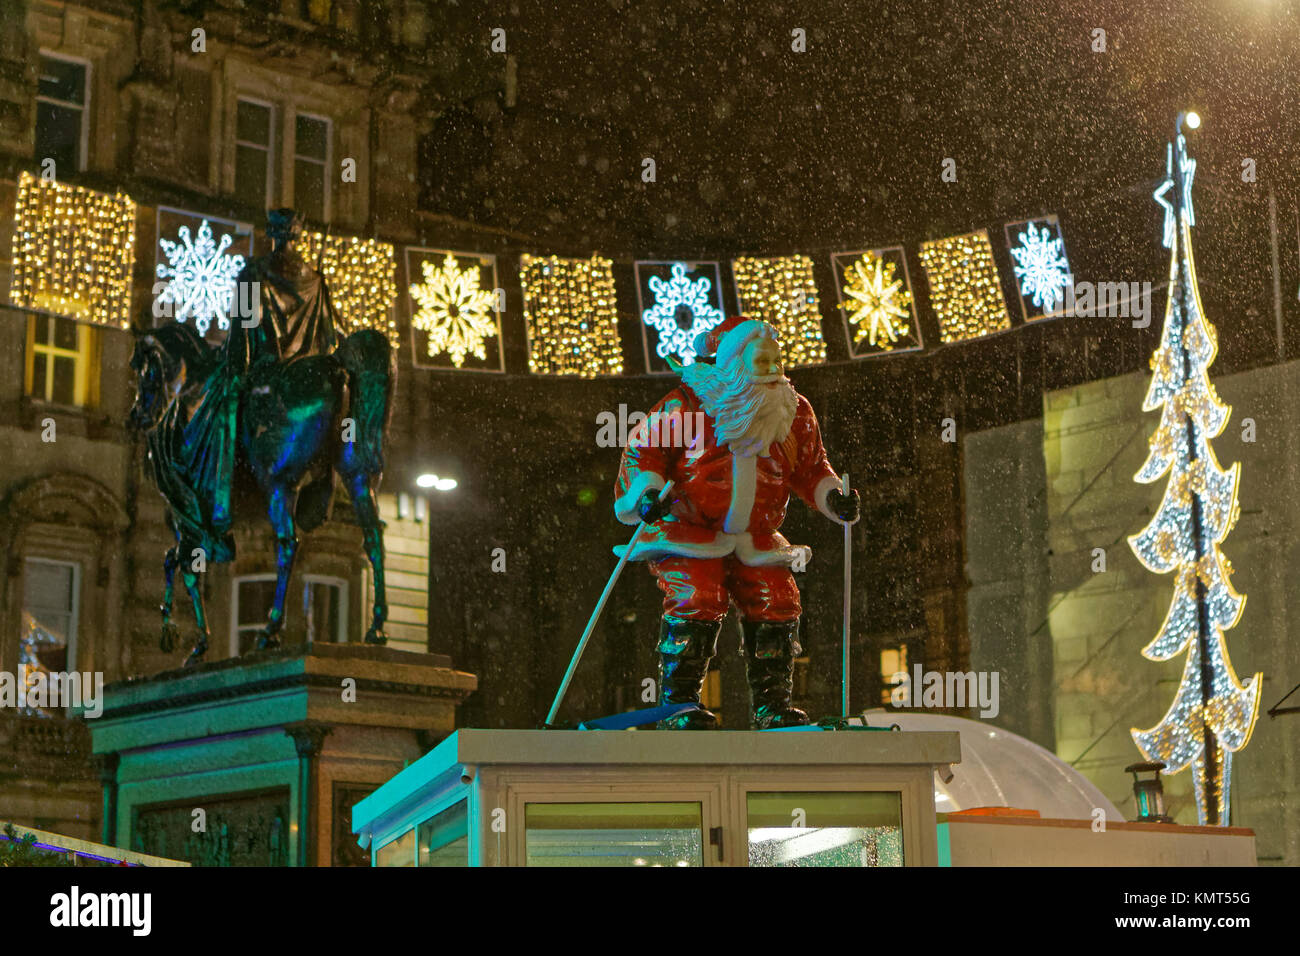 Santa claus Skifahren Schnee ornament Dummy statue Glasgow liebt Weihnachtsmarkt fayre Markt Karneval Unterhaltung George Square, Glasgow, Glasgow Stockfoto